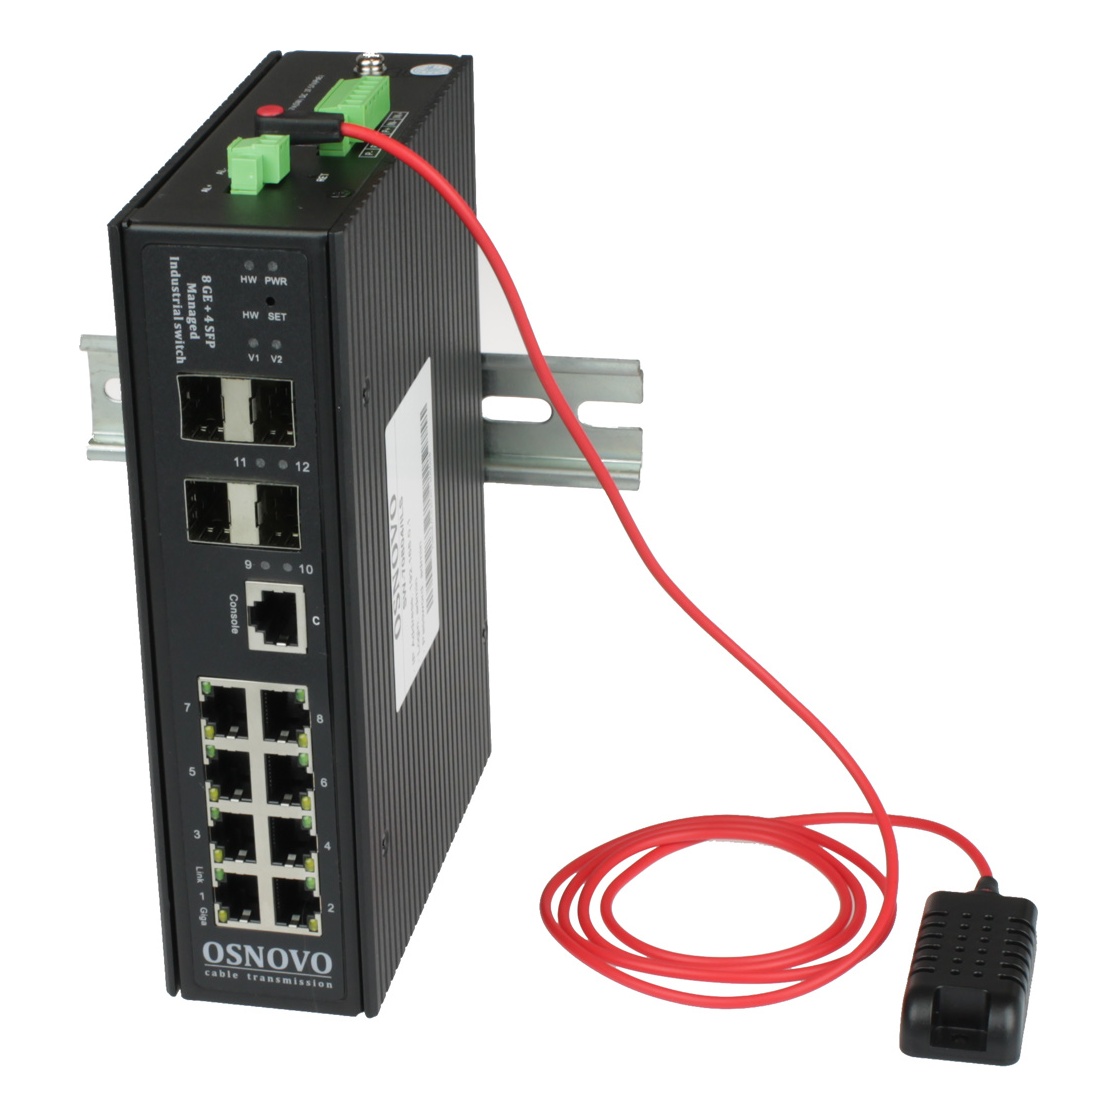 OSNOVO SW-70804/ILS SW-70804/ILS Промышленный управляемый (L2+) коммутатор Gigabit Ethernet на 8GE RJ45 + 4 GE SFP порта с функцией мониторинга температуры/ влажности/ напряжения